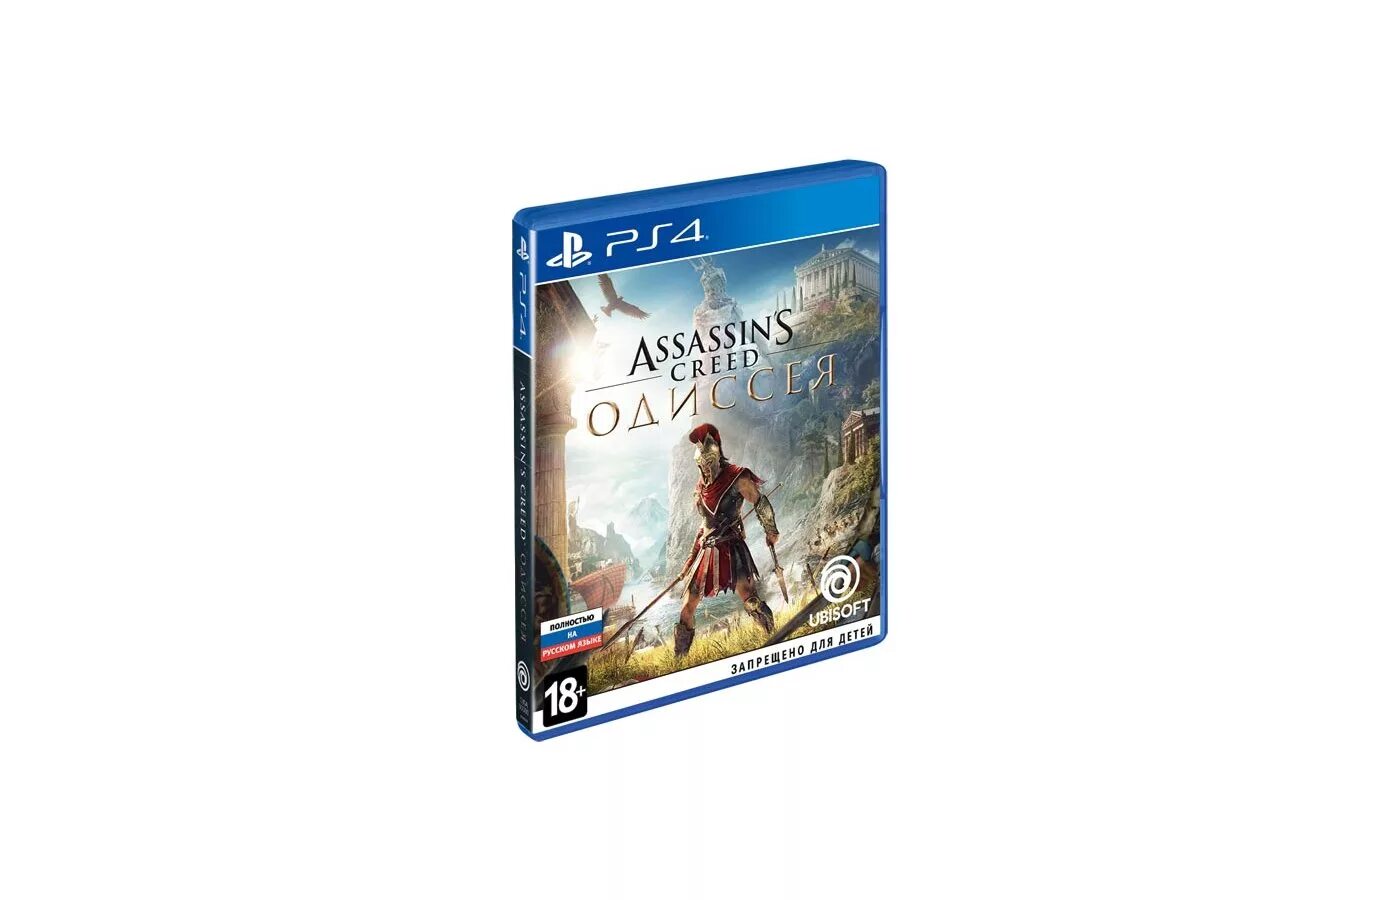 Ассасин Крид Одиссея диск ПС 4. Диск на ПС 4 ассасин Крид Odyssey. Assassin's Creed Одиссея ps4. Ps4 диск Assassins Creed. Ассасин игры пс4